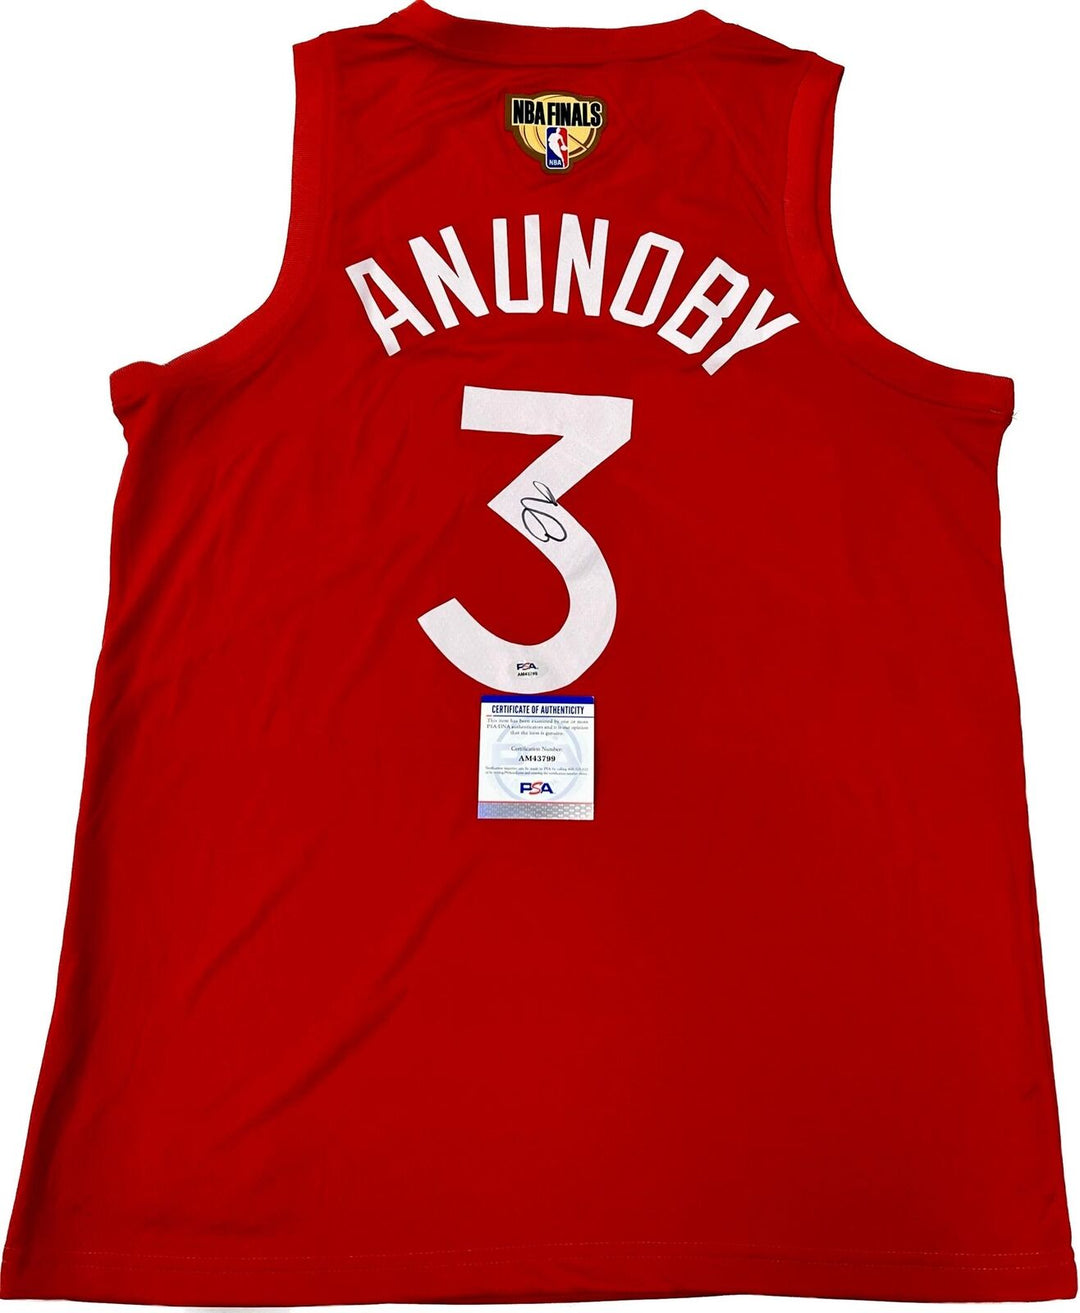 OG Anunoby signed jersey PSA/DNA Toronto Raptors Autographed Image 1